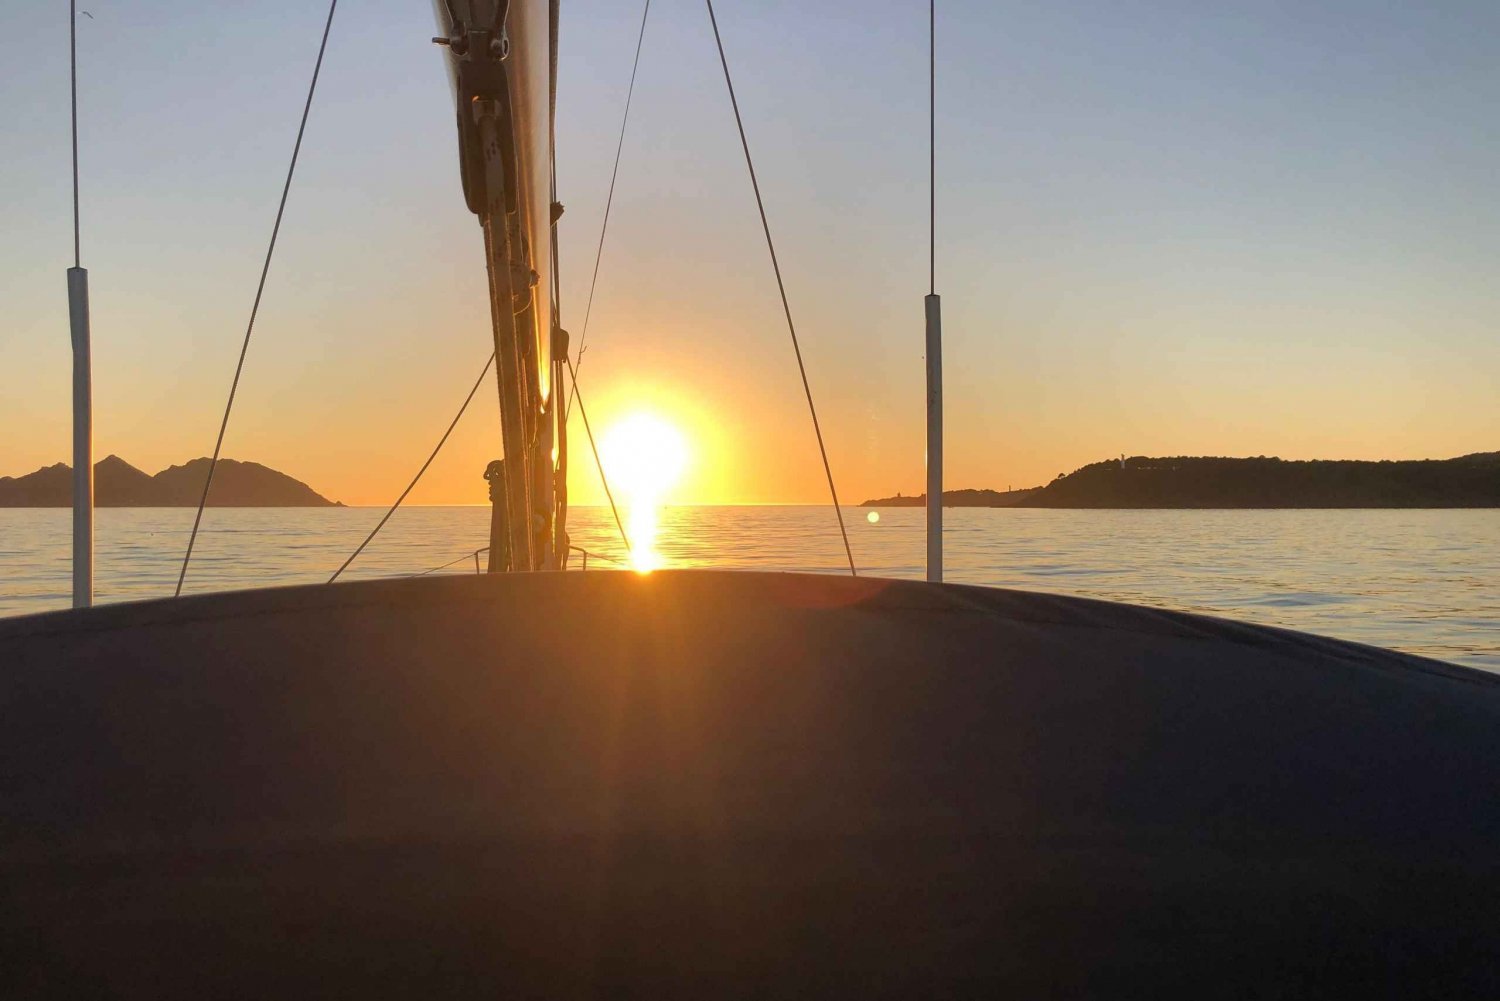 Solnedgang på en luksuriøs sejlbåd - Lagos - Algarve